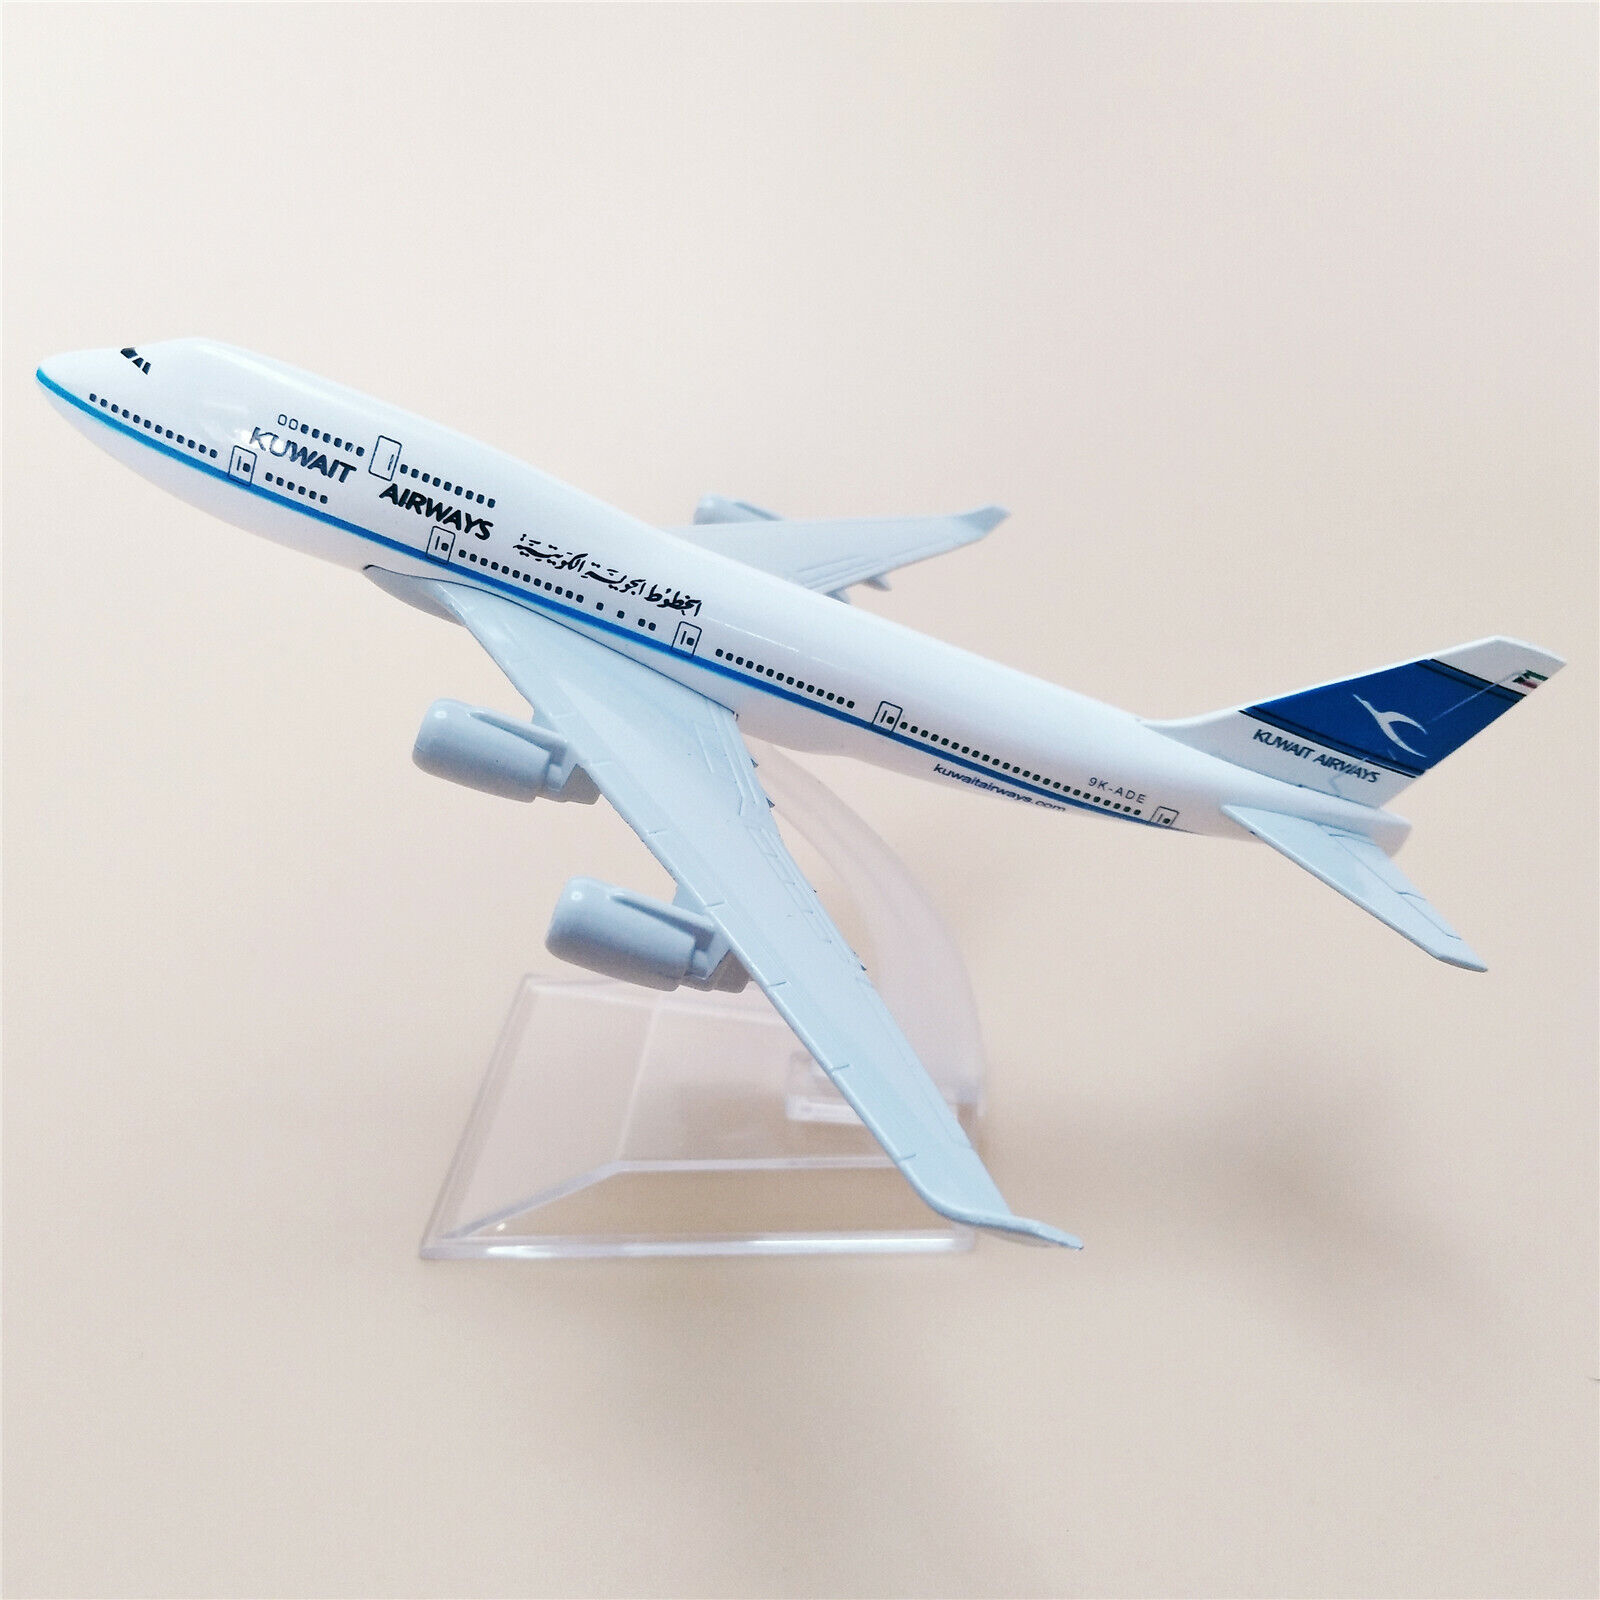 16cm Kuwait Airways Boeing B747-400 Airlines Diecast Airplane Model Plane Alloy